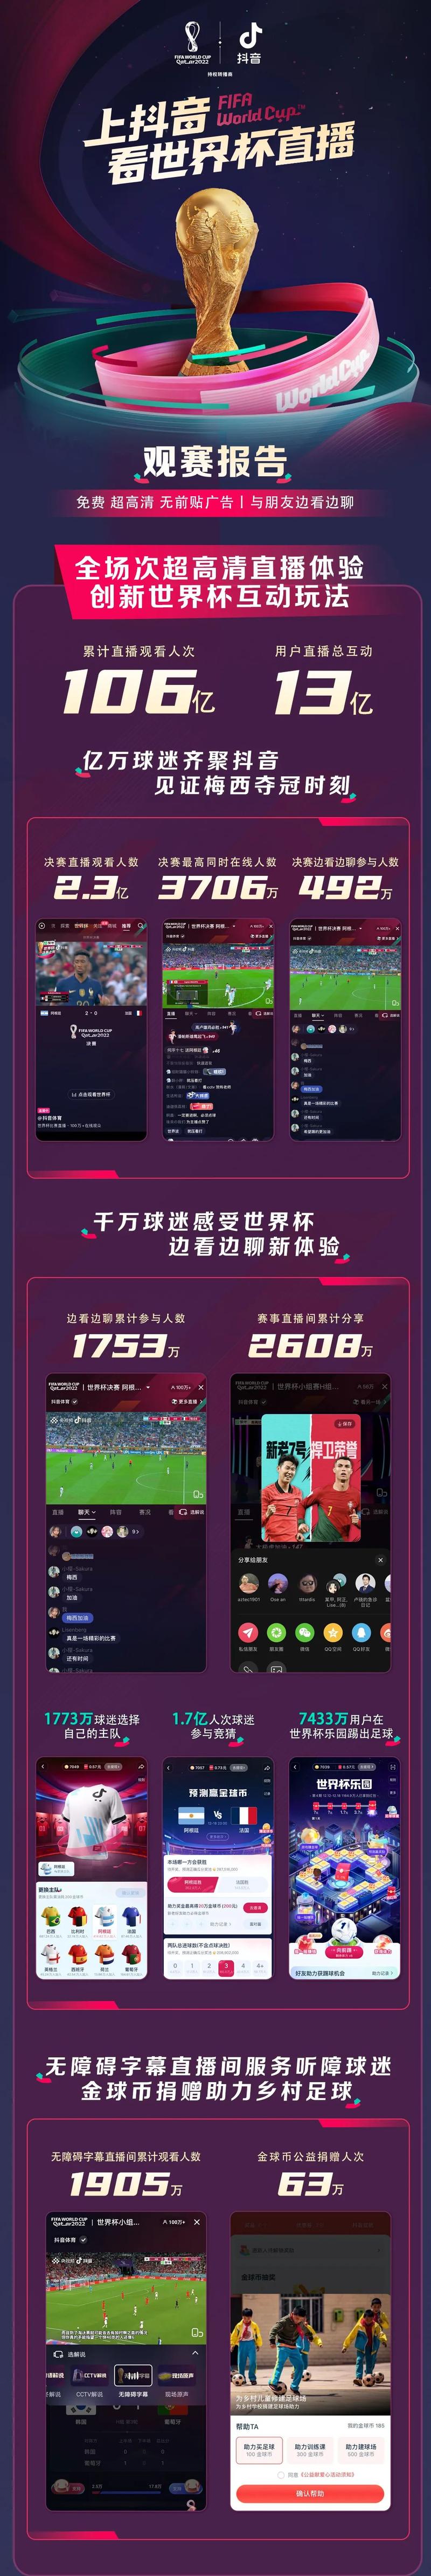 世界杯直播手机版官网